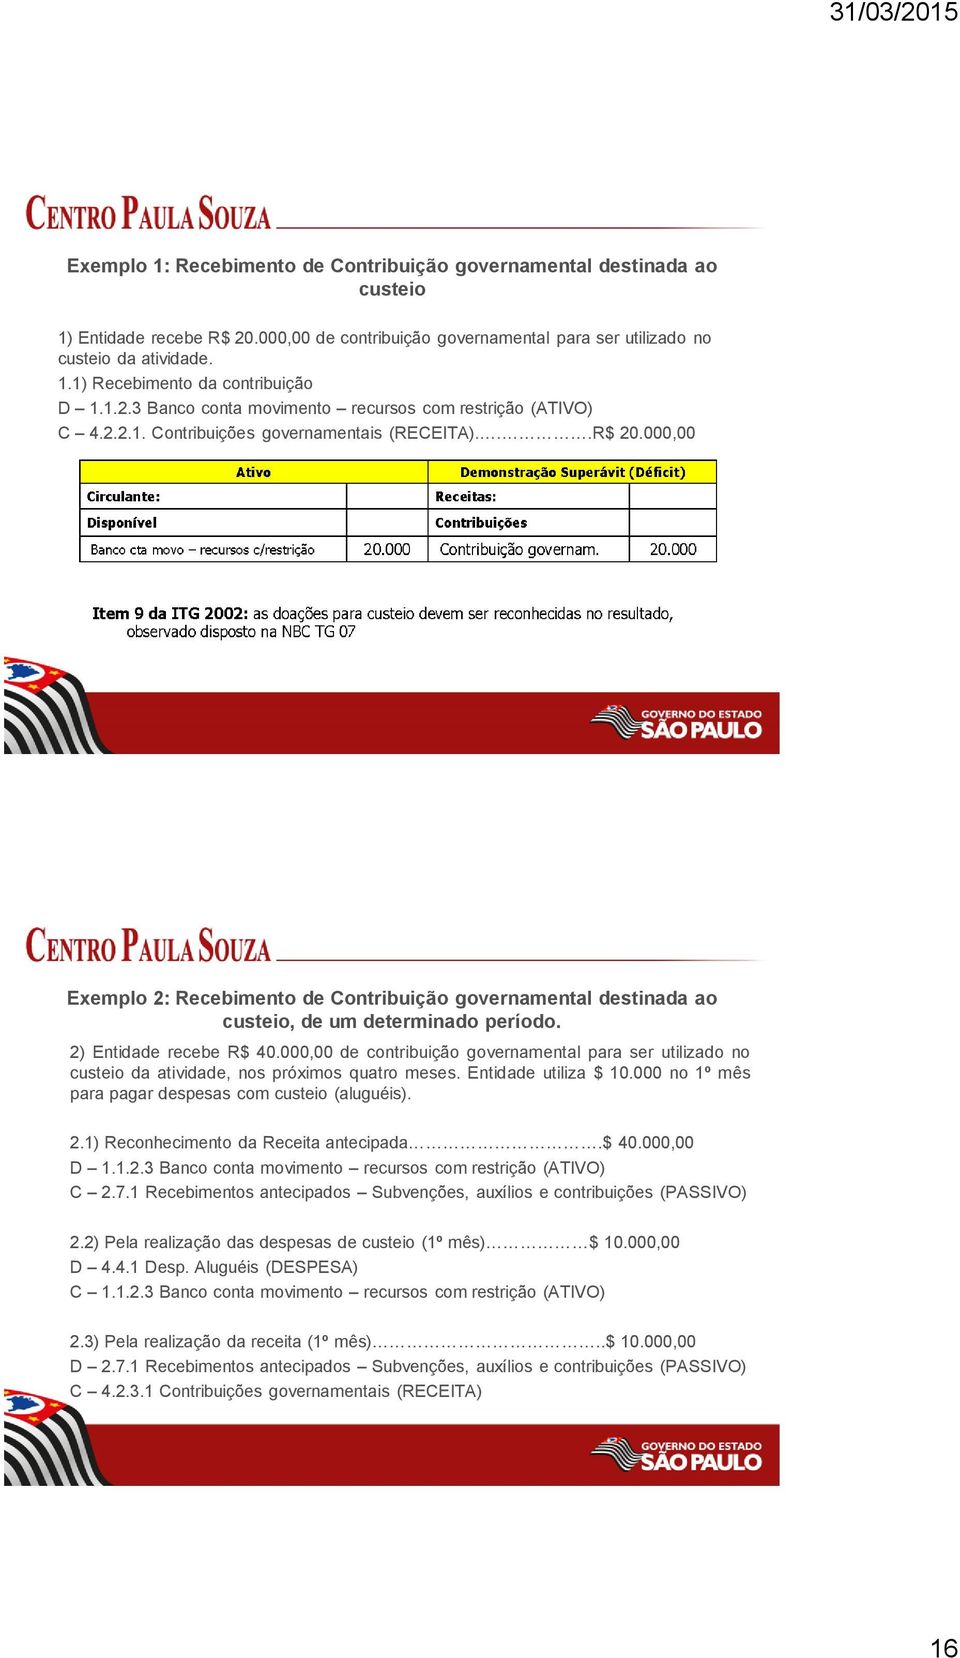 000,00 Exemplo 2: Recebimento de Contribuição governamental destinada ao custeio, de um determinado período. 2) Entidade recebe R$ 40.